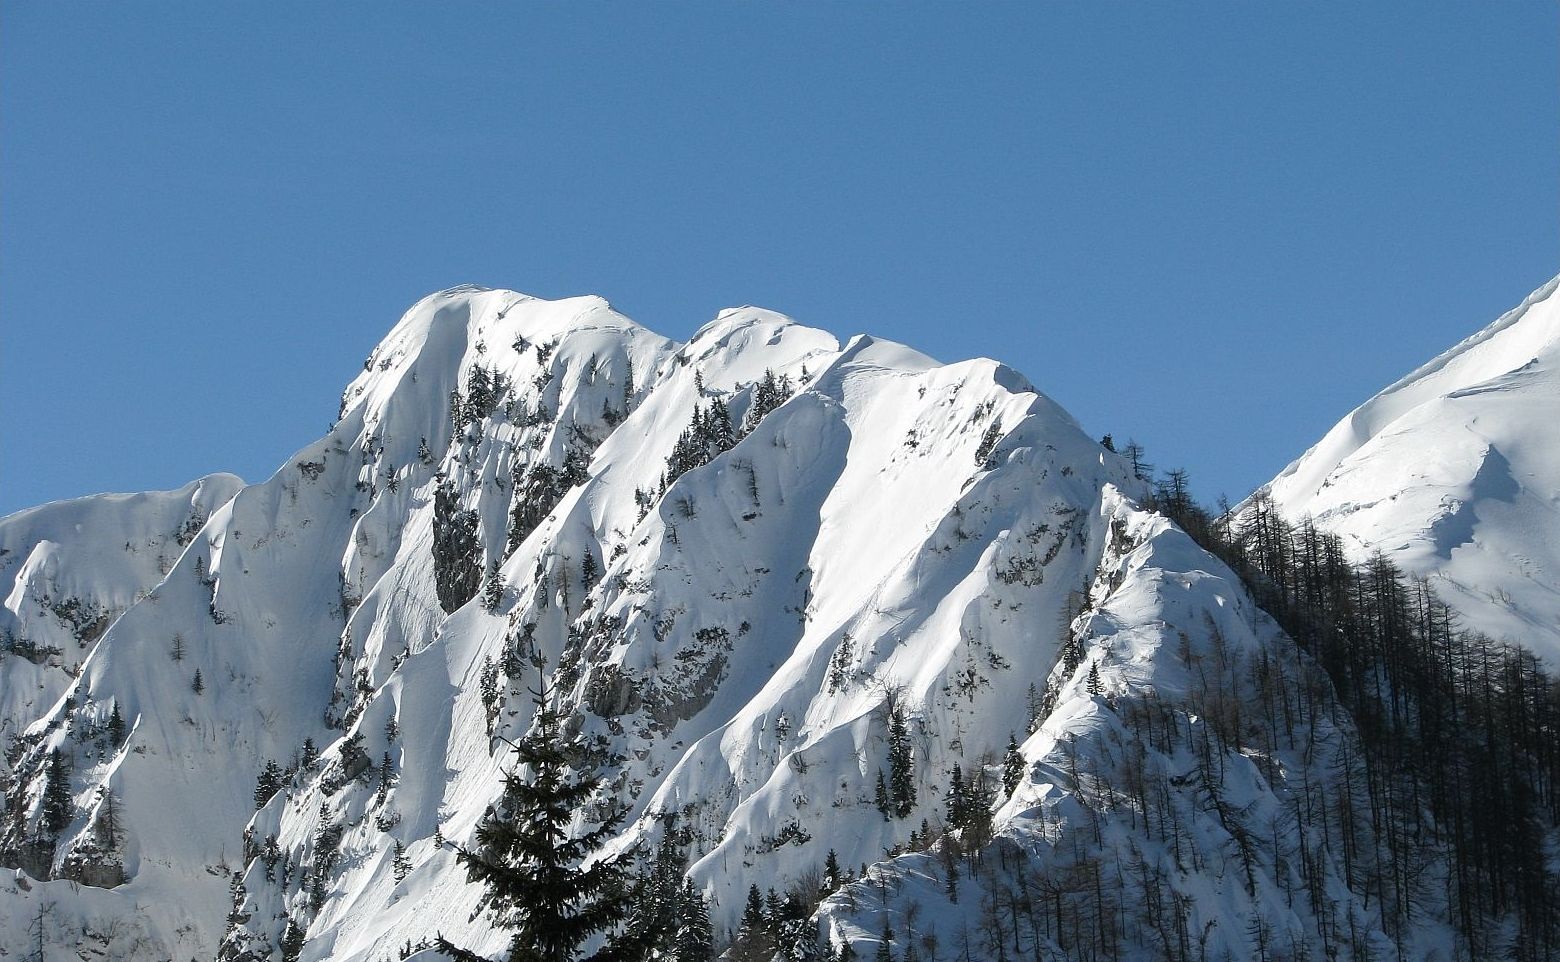 Razgledni greben gore Šoštar, ki deli Gorenjsko od Primorske je še posebno privlačen v zimskem času, njegova pobočja so vedno bogata s snežno odejo ...